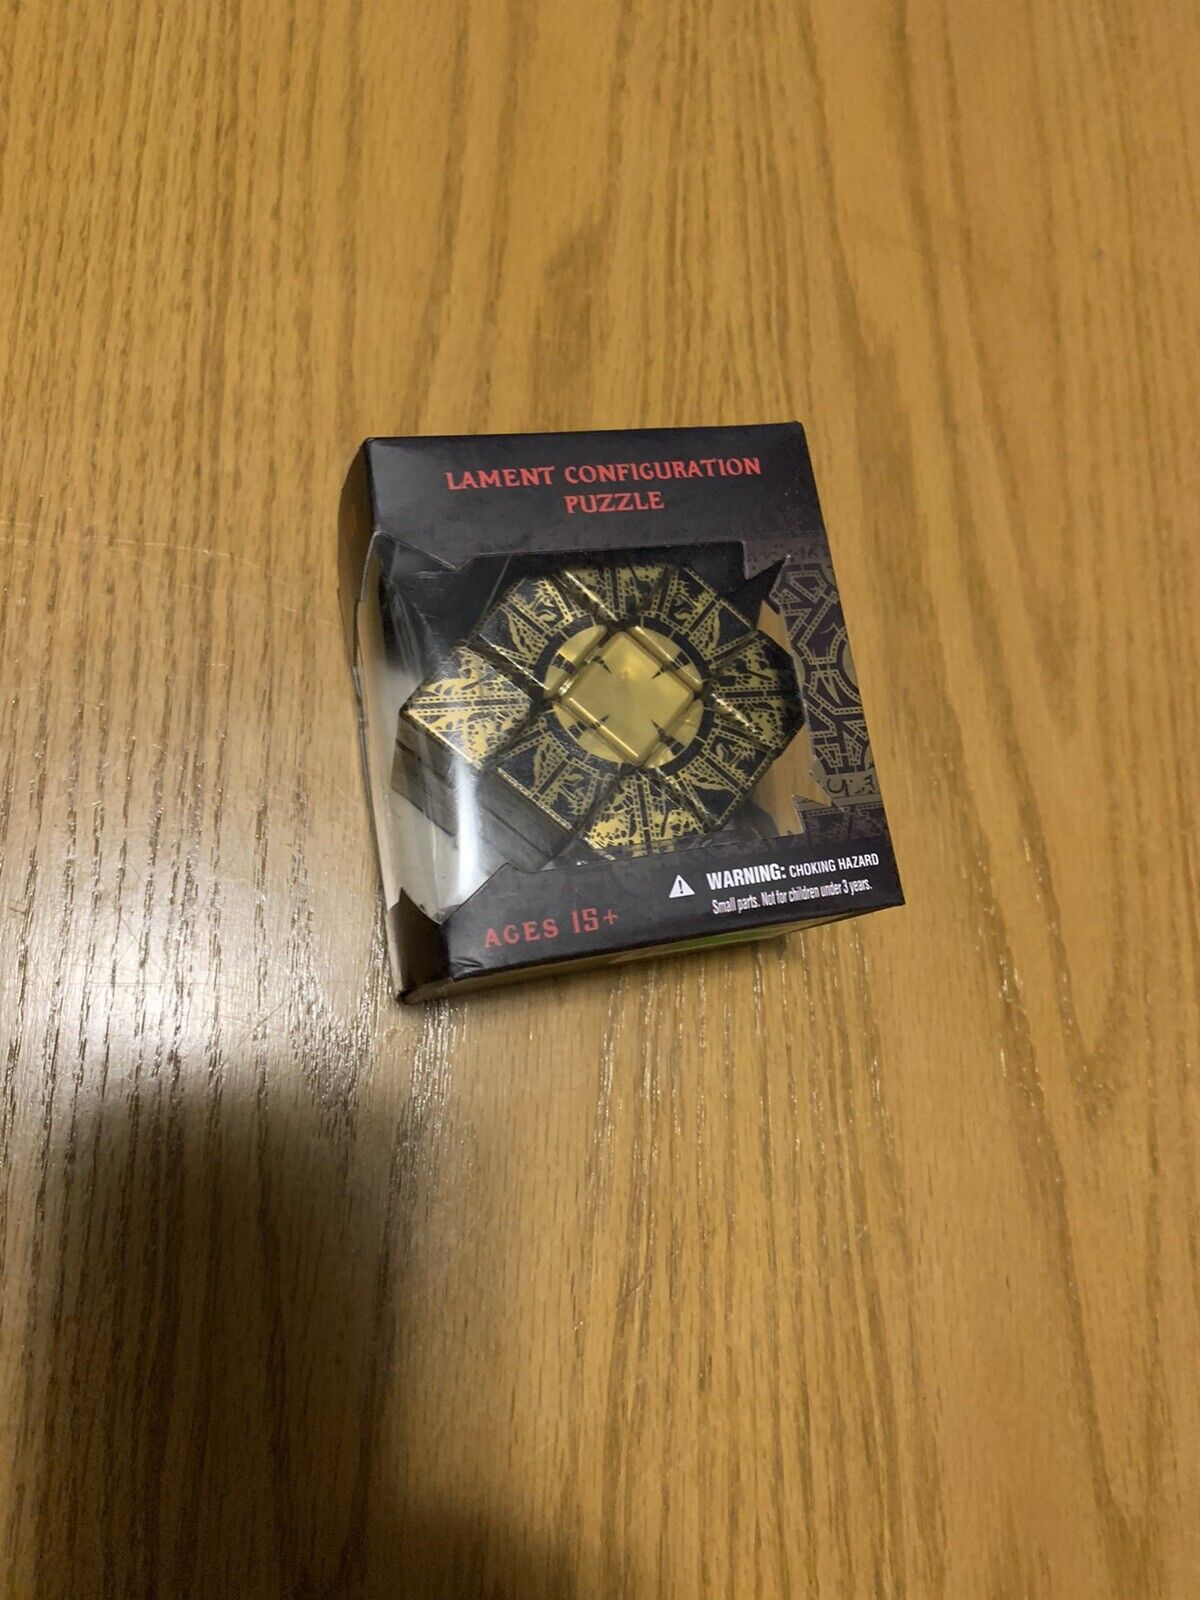 Hellraiser III Lament Configuration Puzzle Box. Mezco 2017. New In Box. Rare